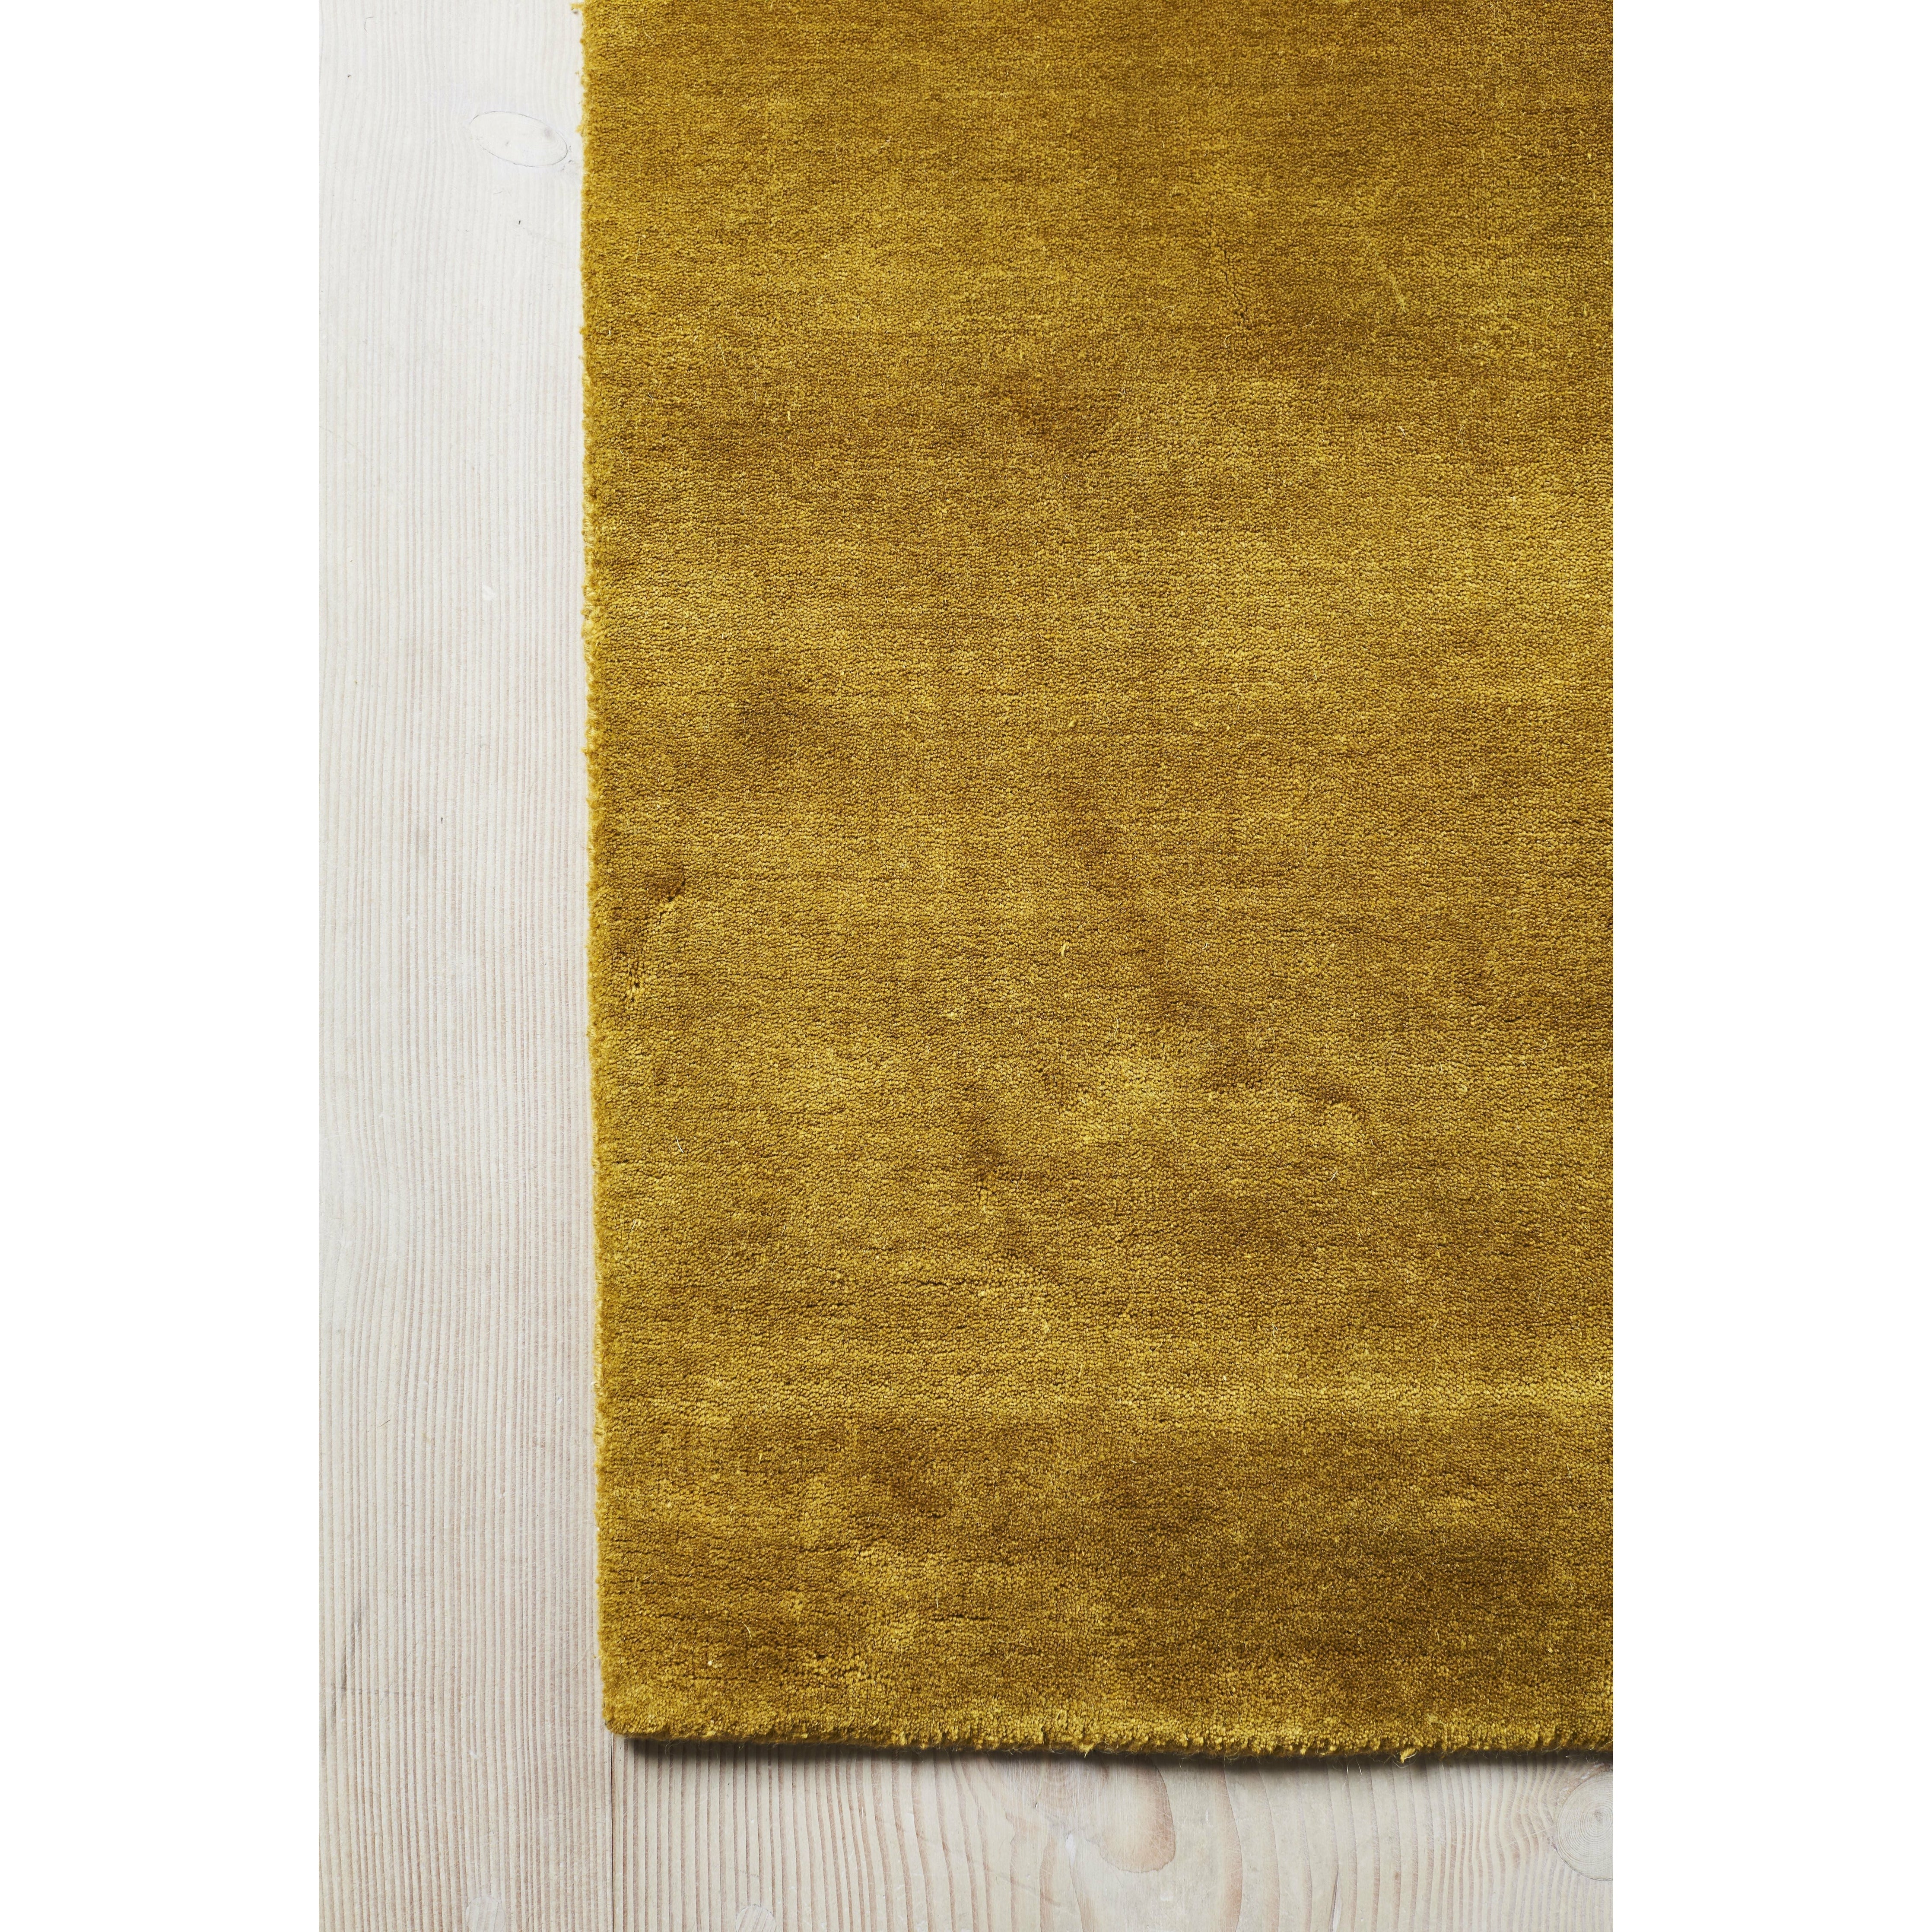 Massimo Terre Bamboo tapis chinois jaune, 140x200 cm